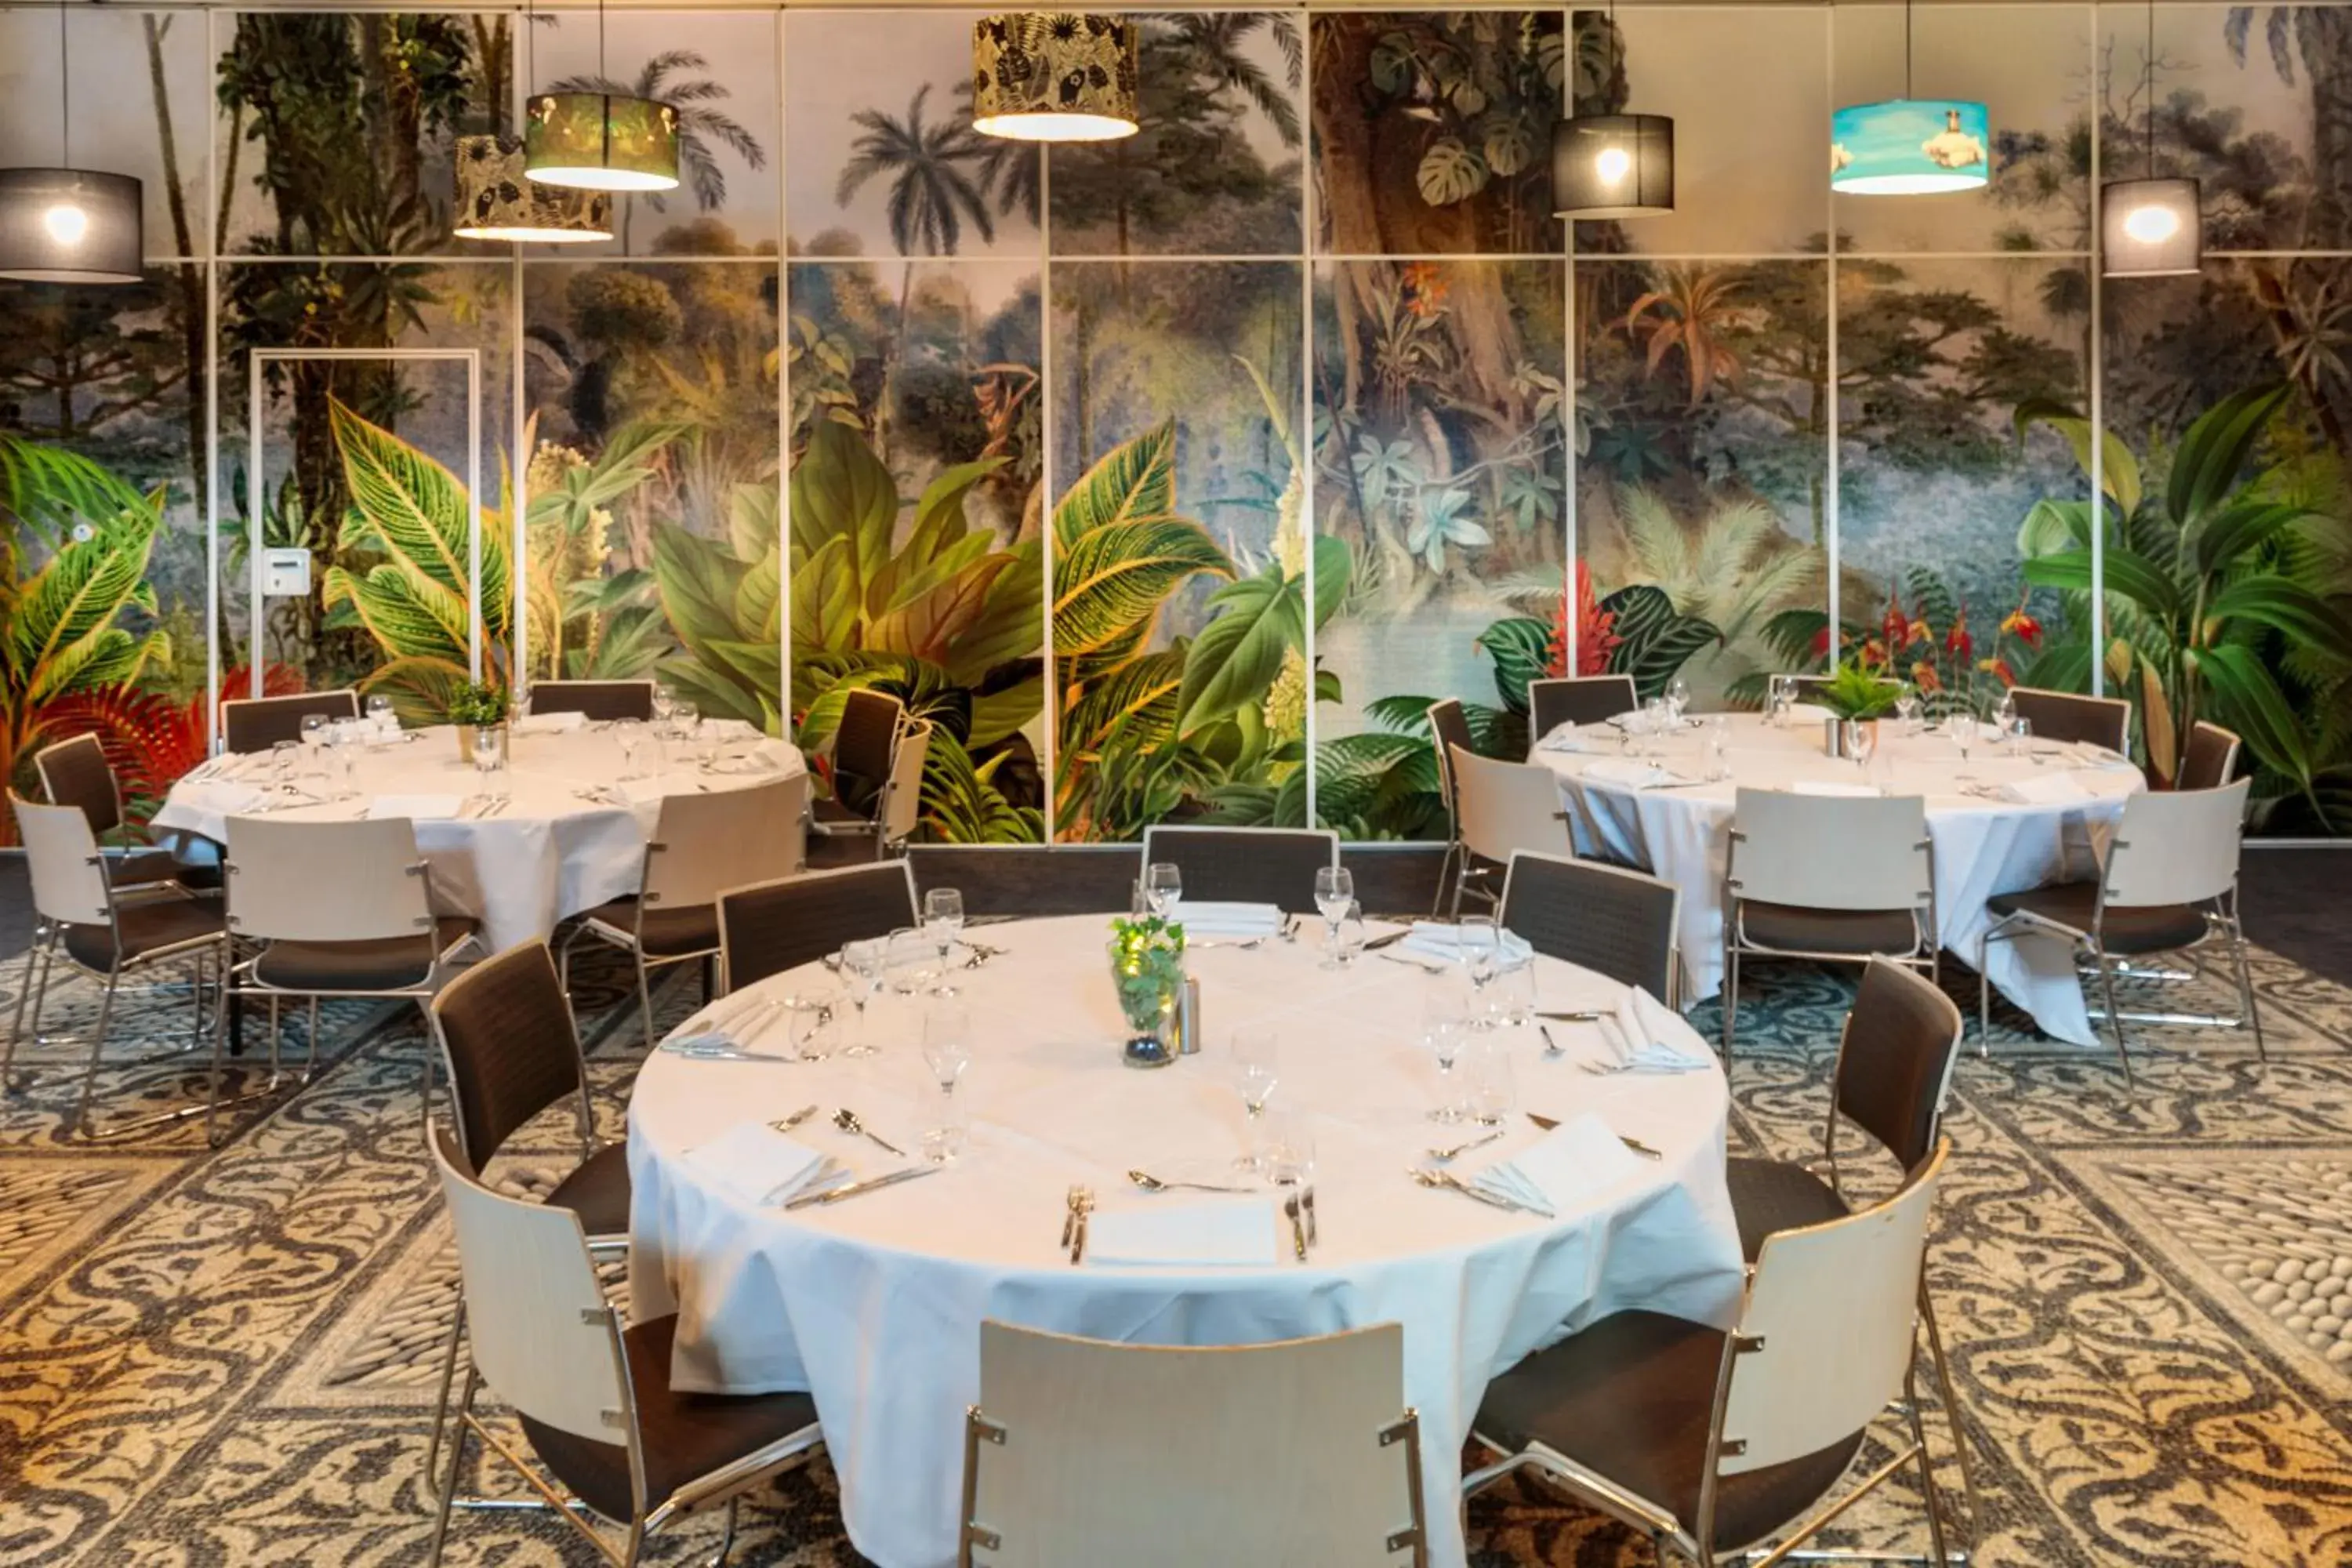 Banquet/Function facilities, Restaurant/Places to Eat in Novotel Paris 14 Porte d'Orléans